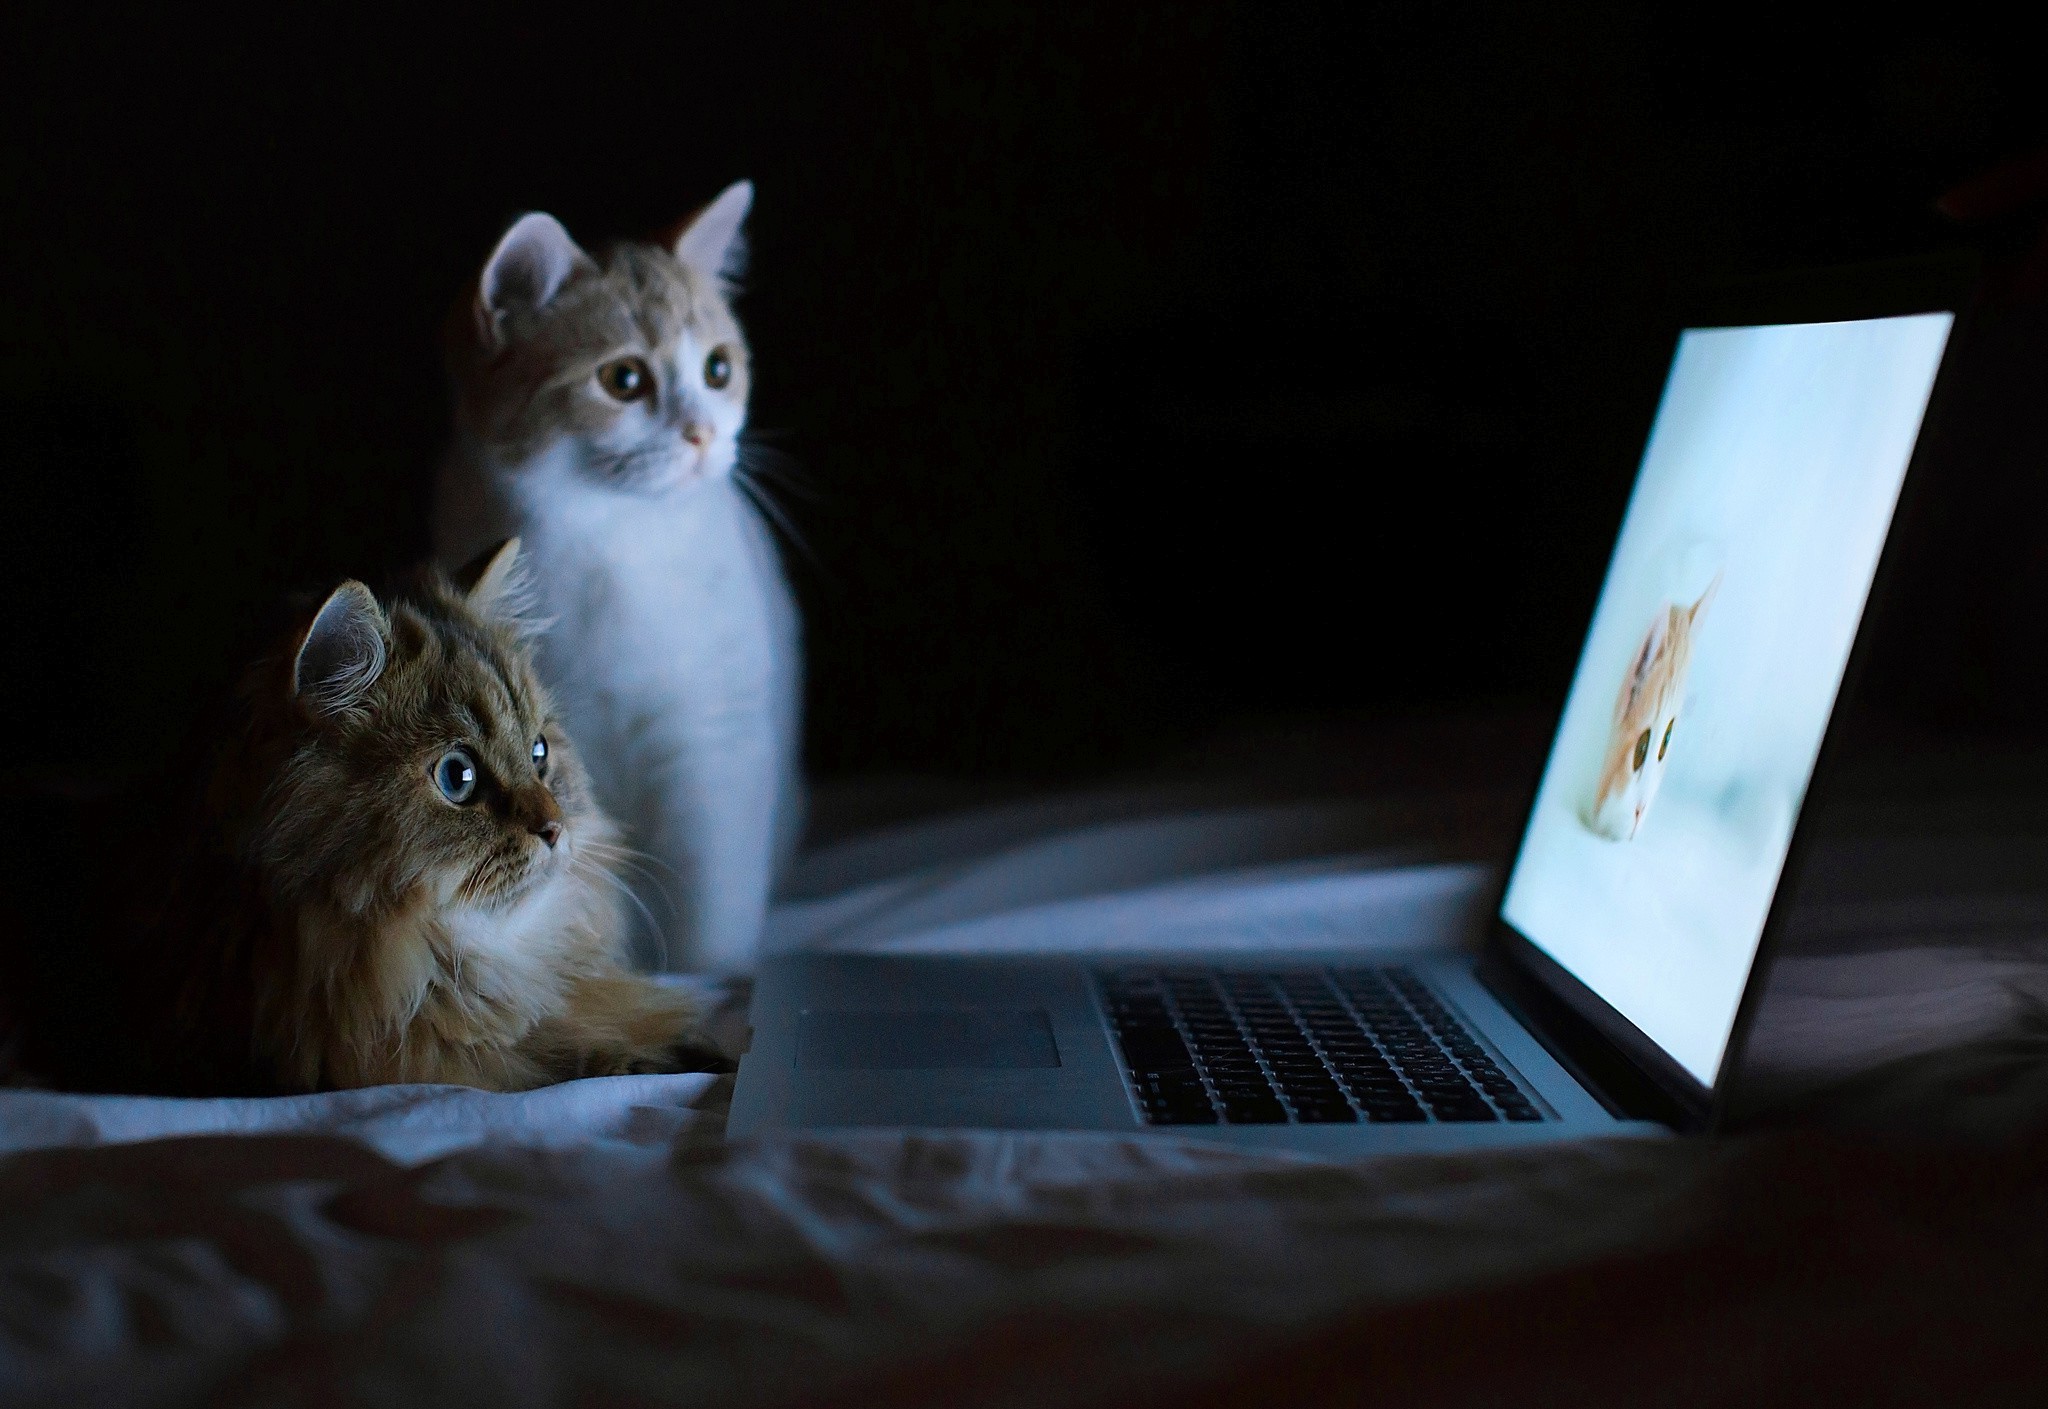 Wallpapers về chú mèo và laptop sẽ làm tăng thêm vẻ tuyệt vời cho màn hình của bạn. Hãy trải nghiệm ngay bức ảnh đáng yêu này để cảm nhận!